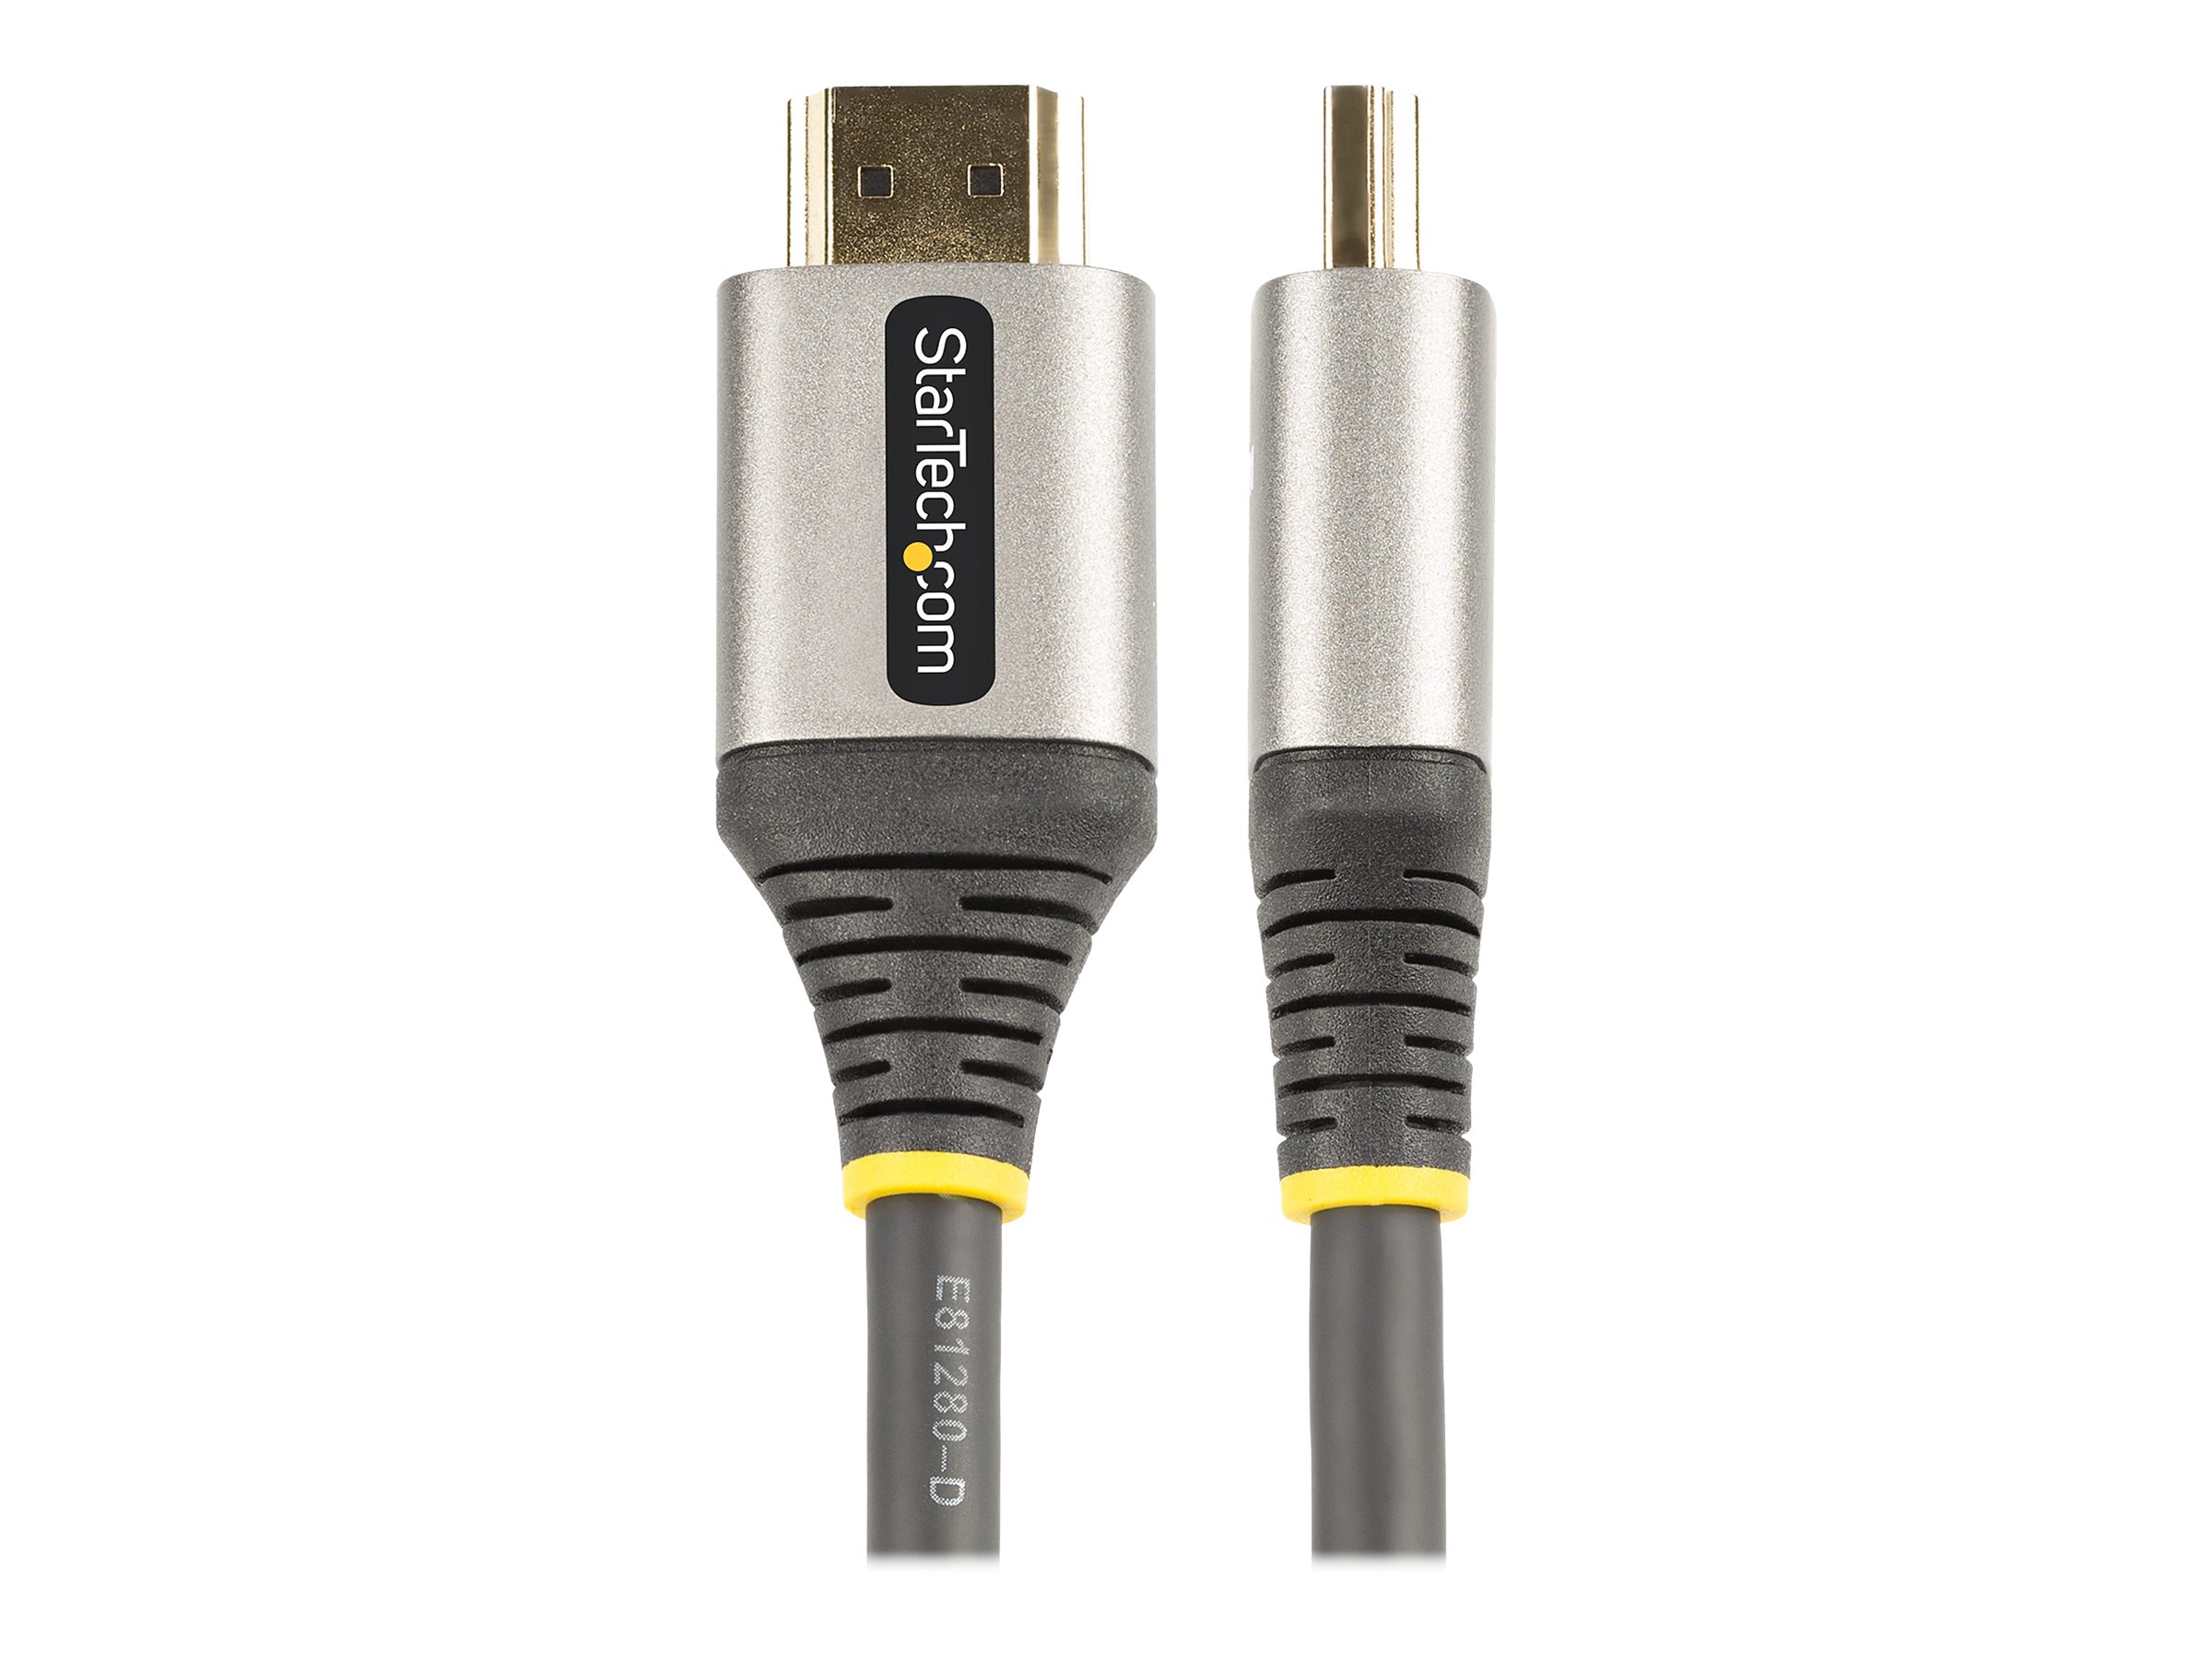 StarTech.com 1m Premium zertifiziertes HDMI 2.0 Kabel - High Speed Ultra HD 4K 60Hz HDMI Kabel mit Ethernet - HDR10, ARC - UHD HDMI Videokabel - Für UHD Monitore, TVs, Displays - M/M (HDMMV1M) - HDMI-Kabel mit Ethernet - 1 m